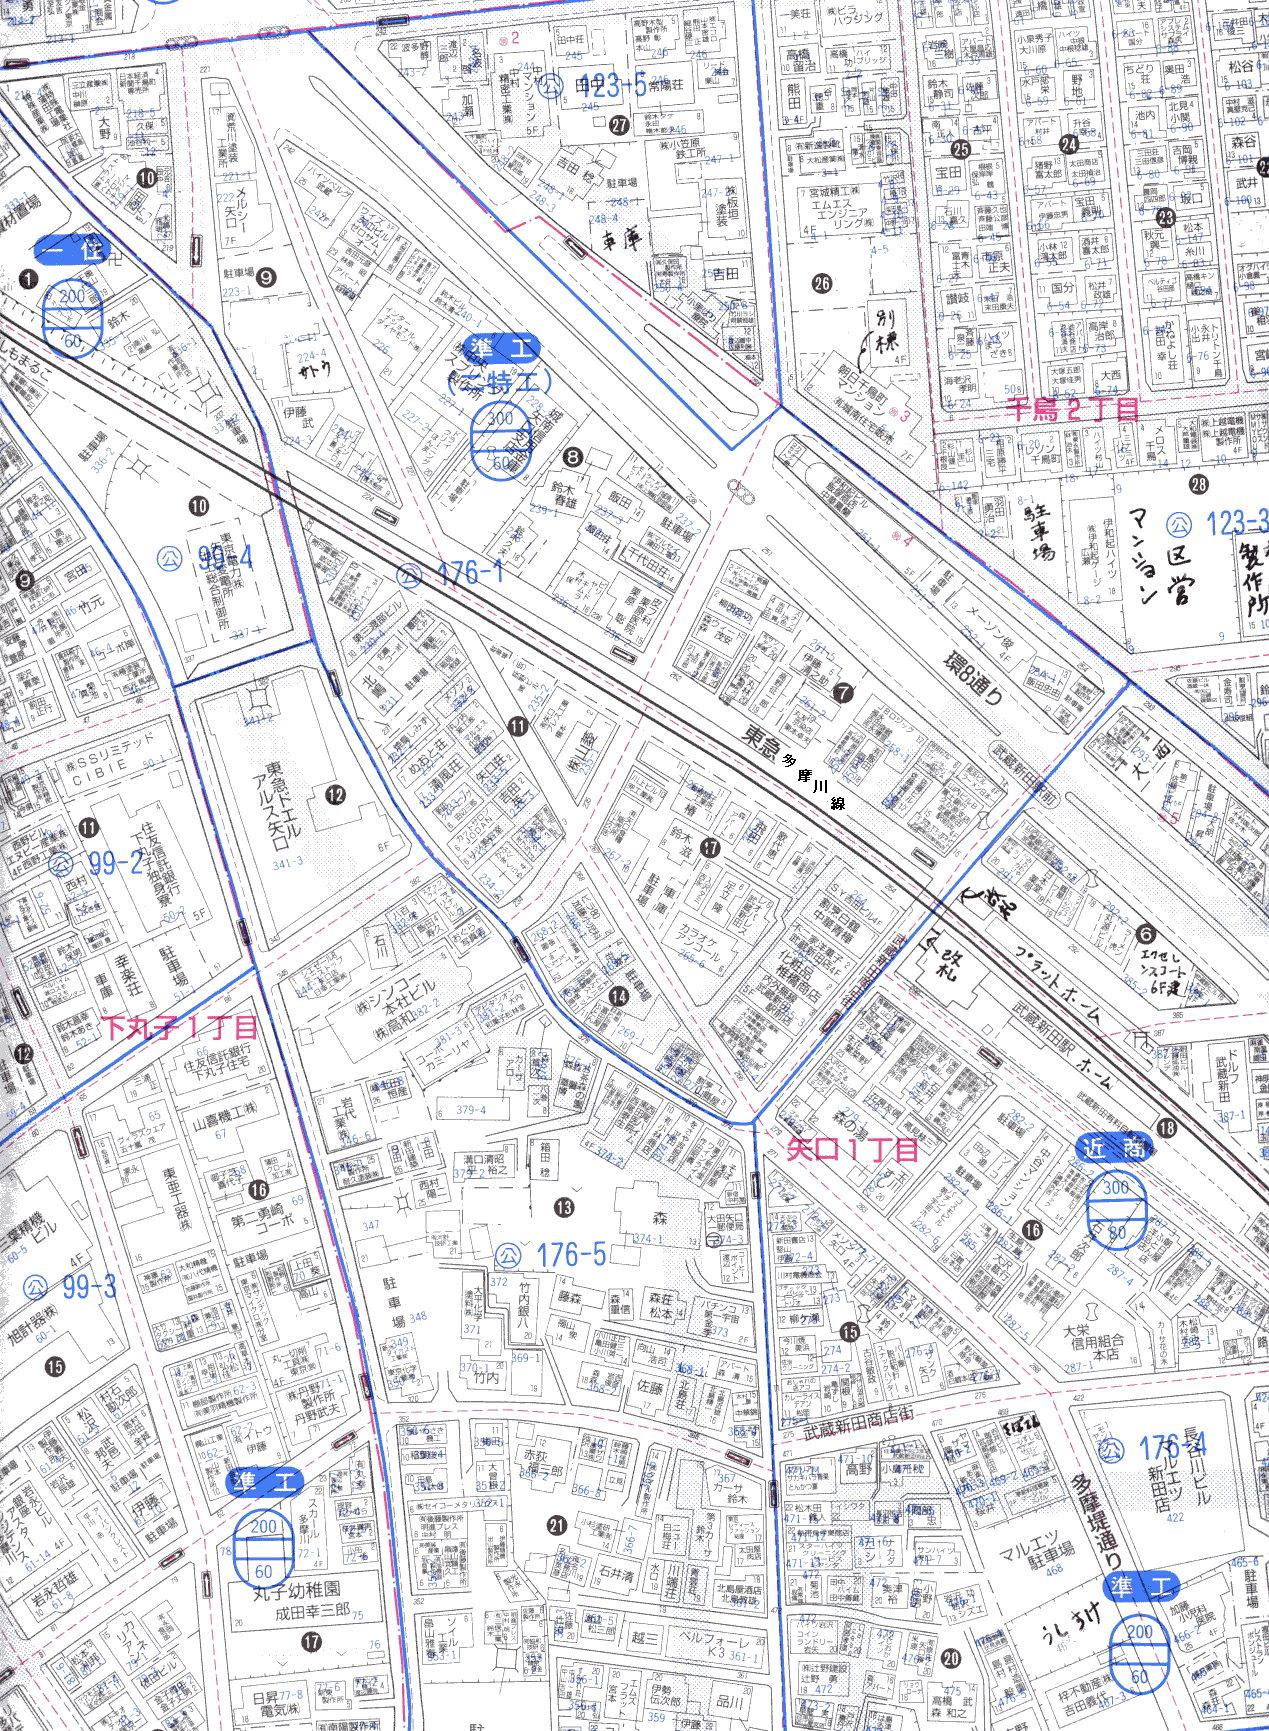 武蔵新田駅周辺の住宅地図